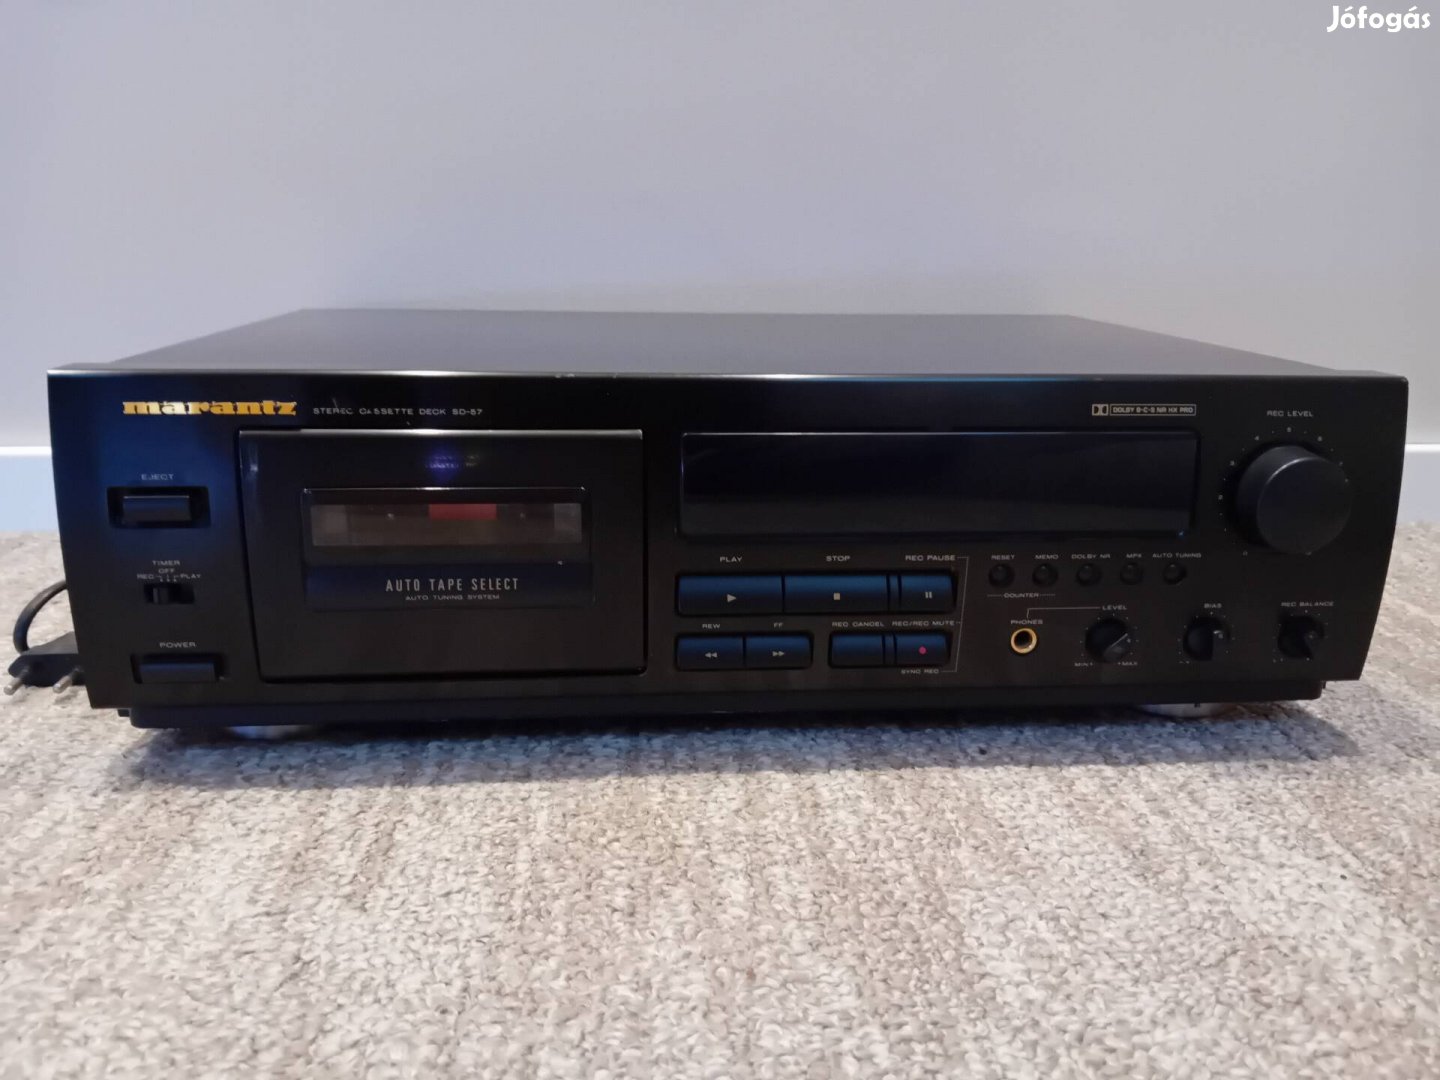 Marantz stereo cassette deck sd-57